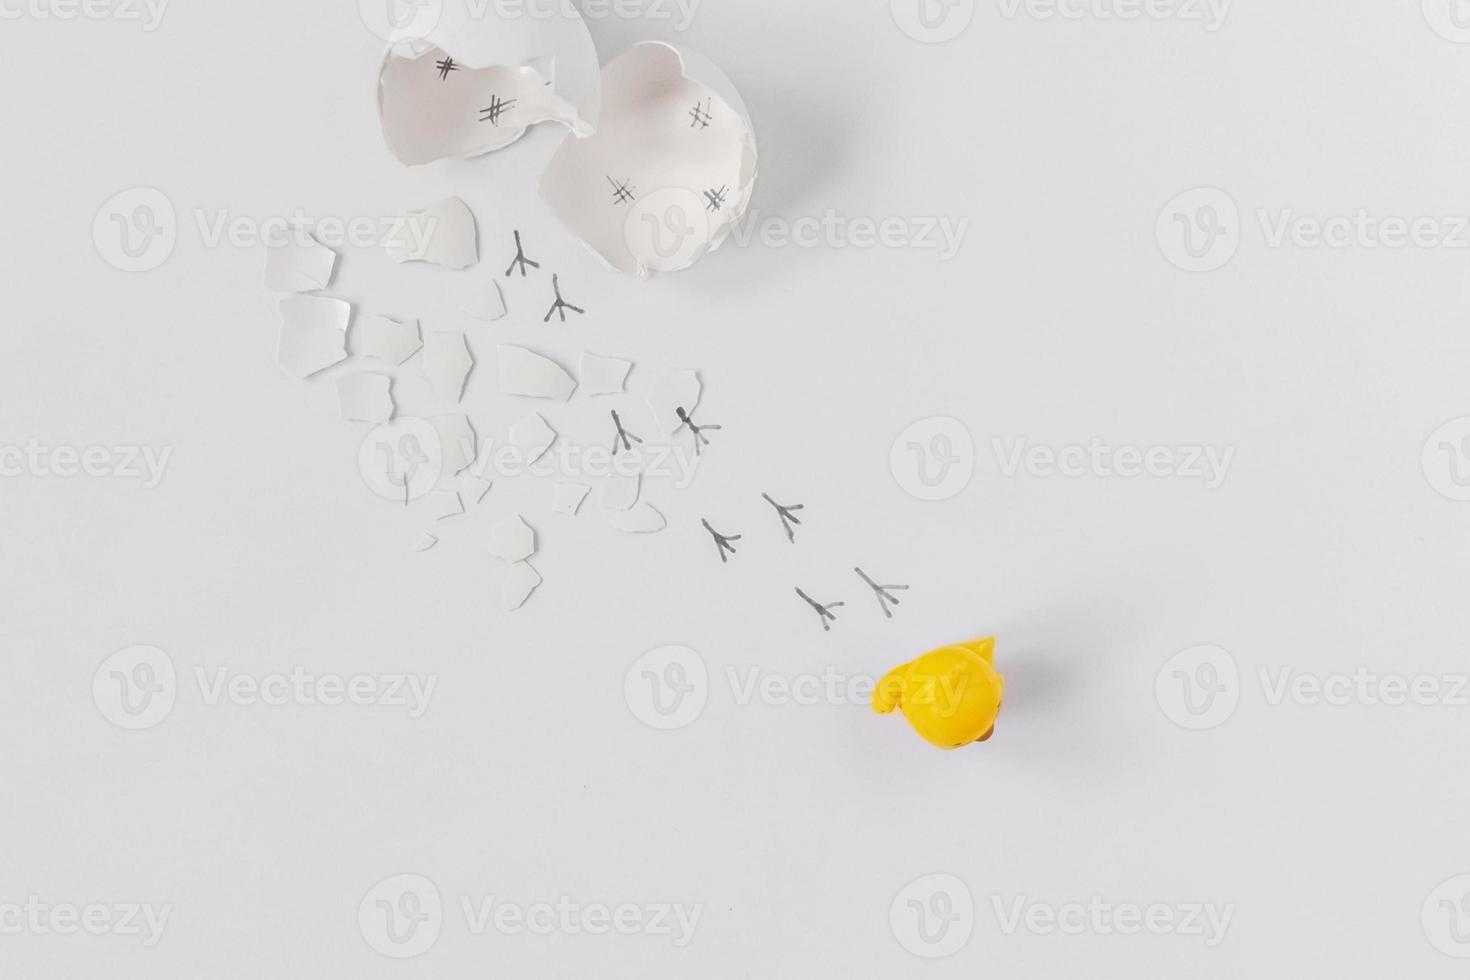 Guscio d'uovo bianco di un uovo di gallina rotto con cocci e impronte di un pulcino isolato su uno sfondo bianco foto